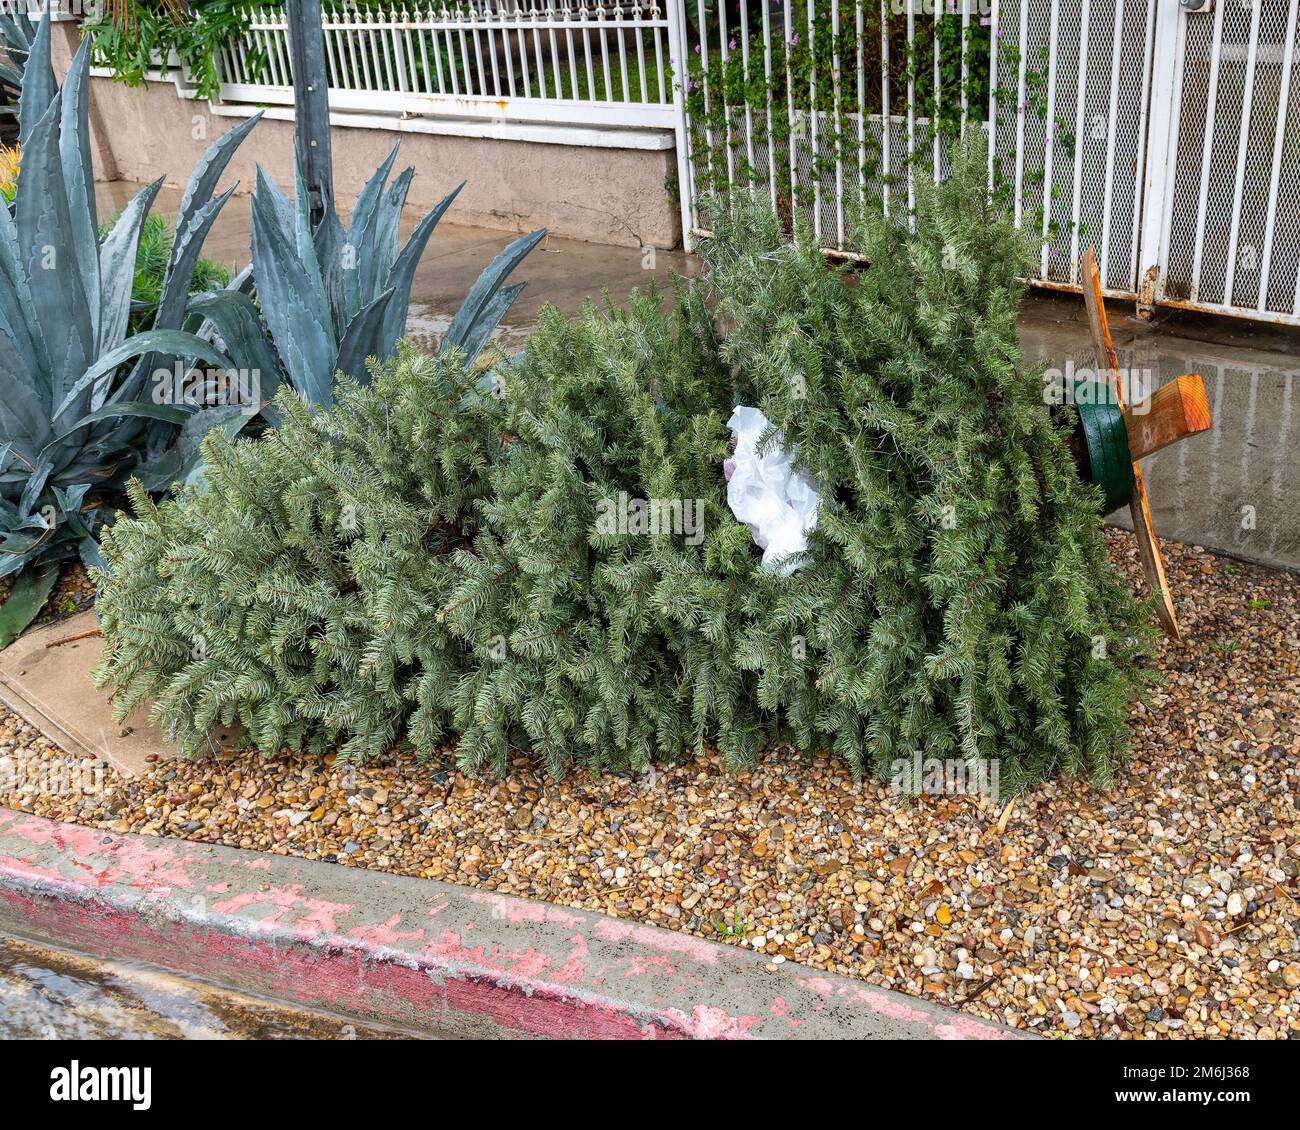 Entsorgte Weihnachtsbäume stapeln sich auf dem Bürgersteig in Los Angeles, Kalifornien. Stockfoto